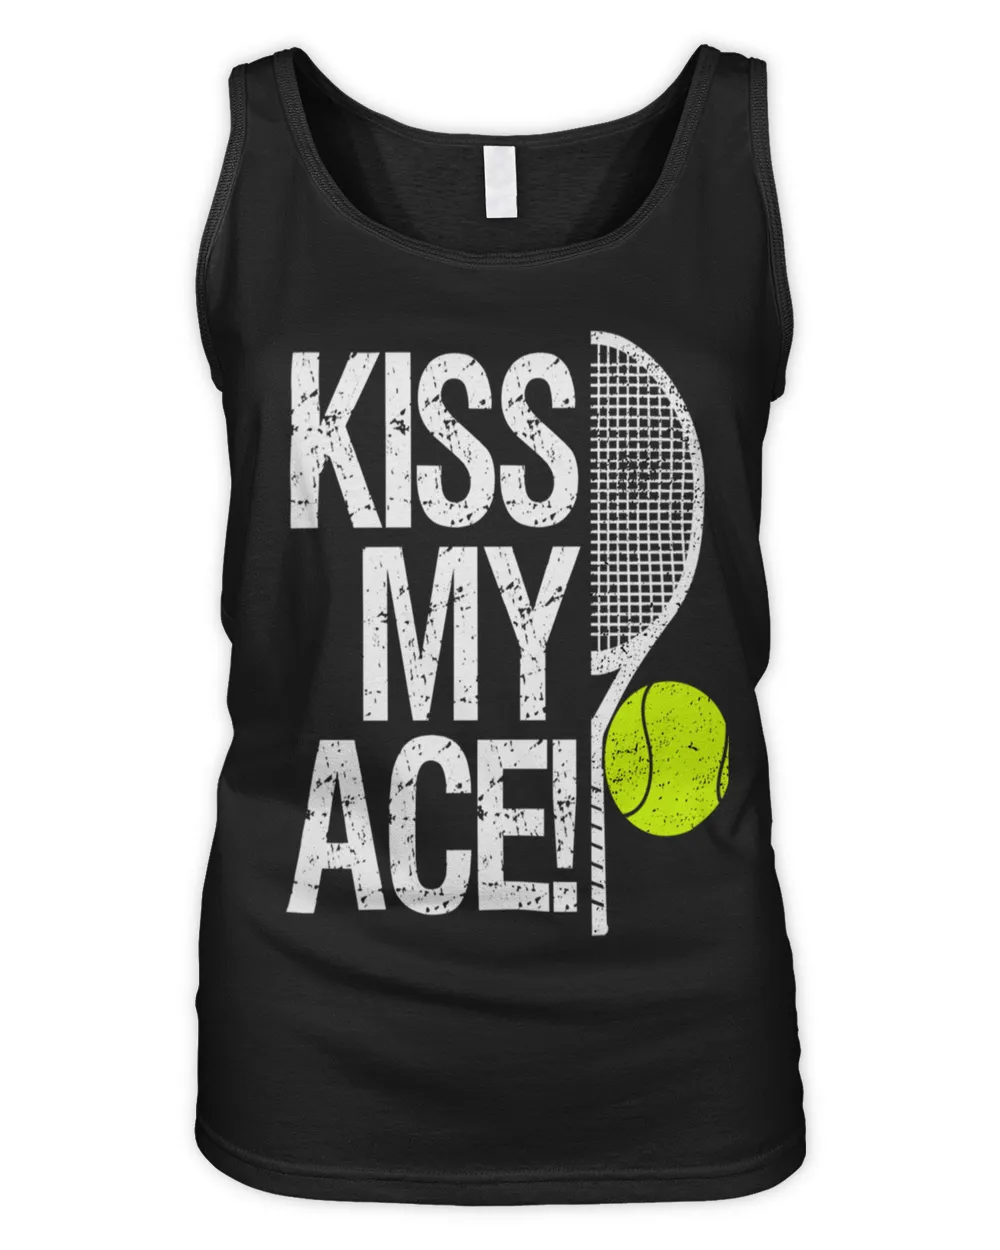 Kiss my ace